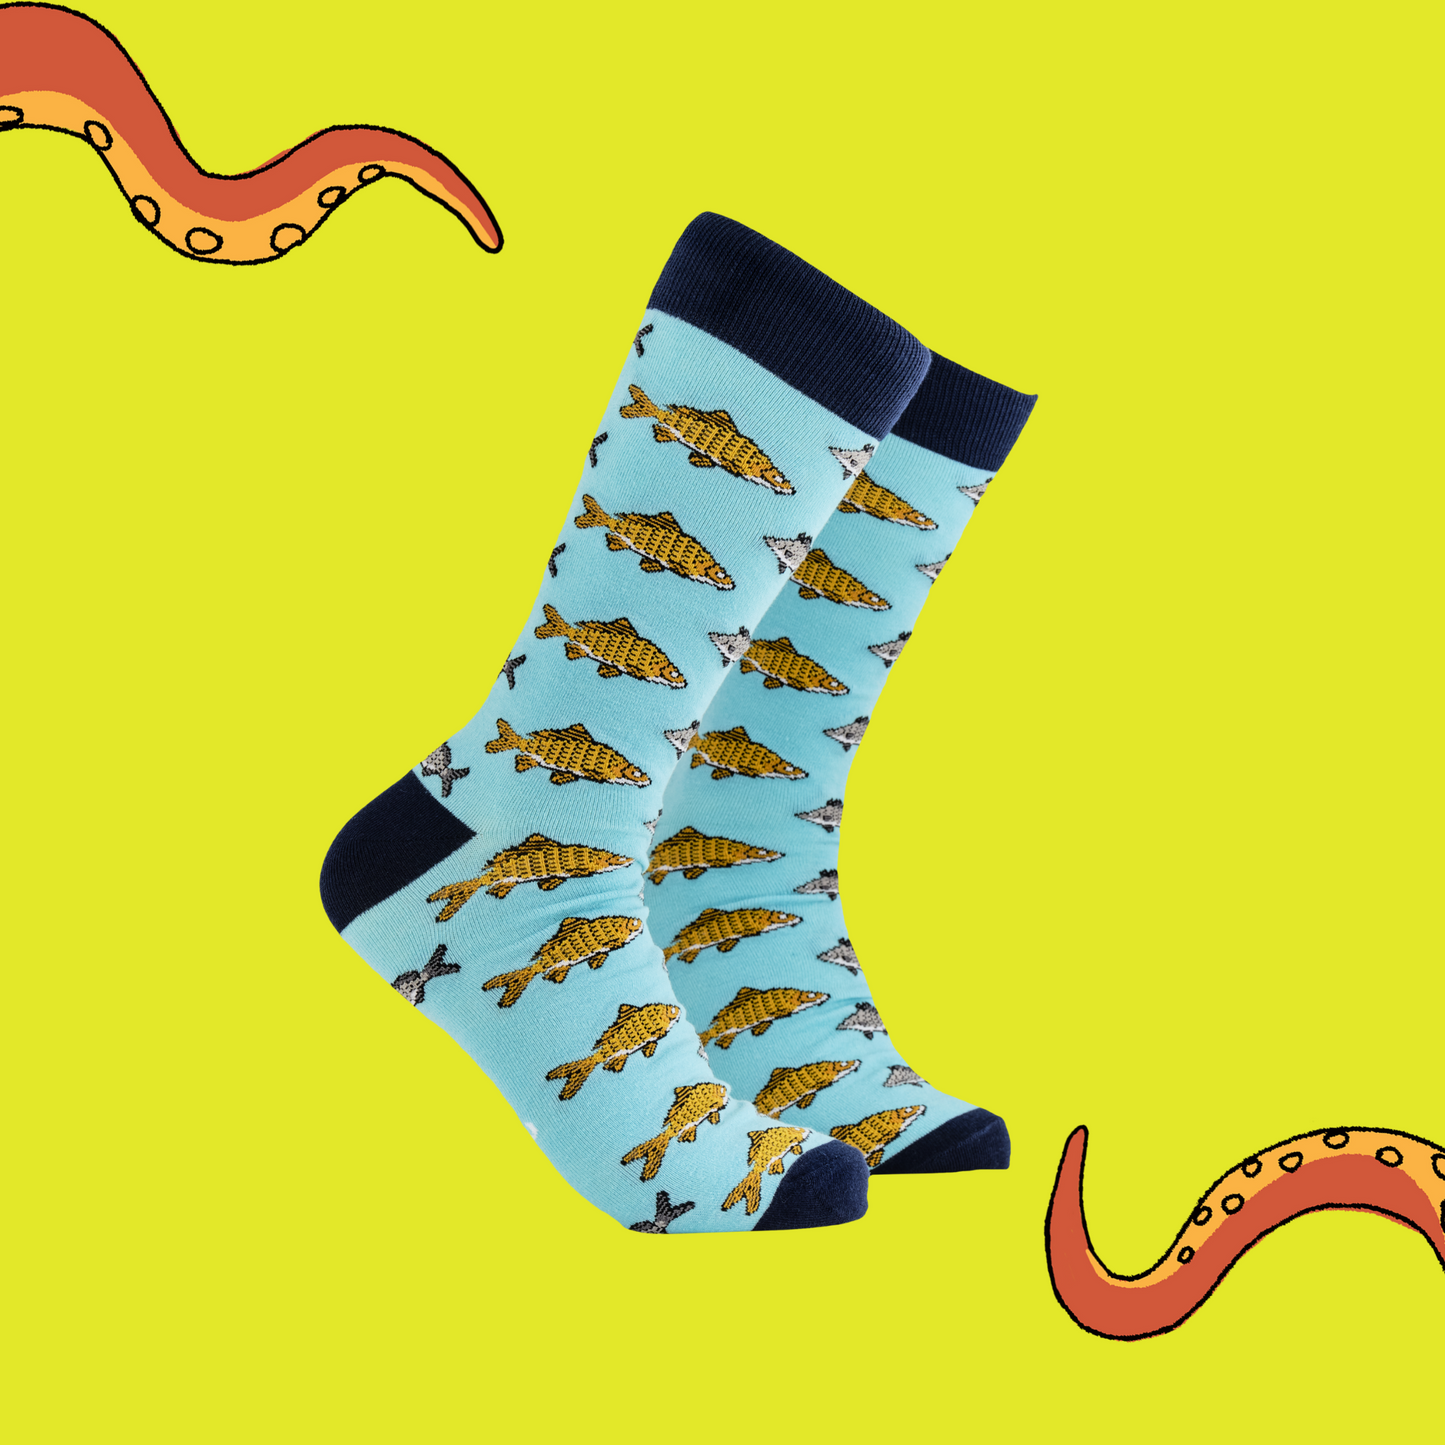 A pair of socks depicting Koi carp fish. Blue legs, dark blue cuff, heel and toe.